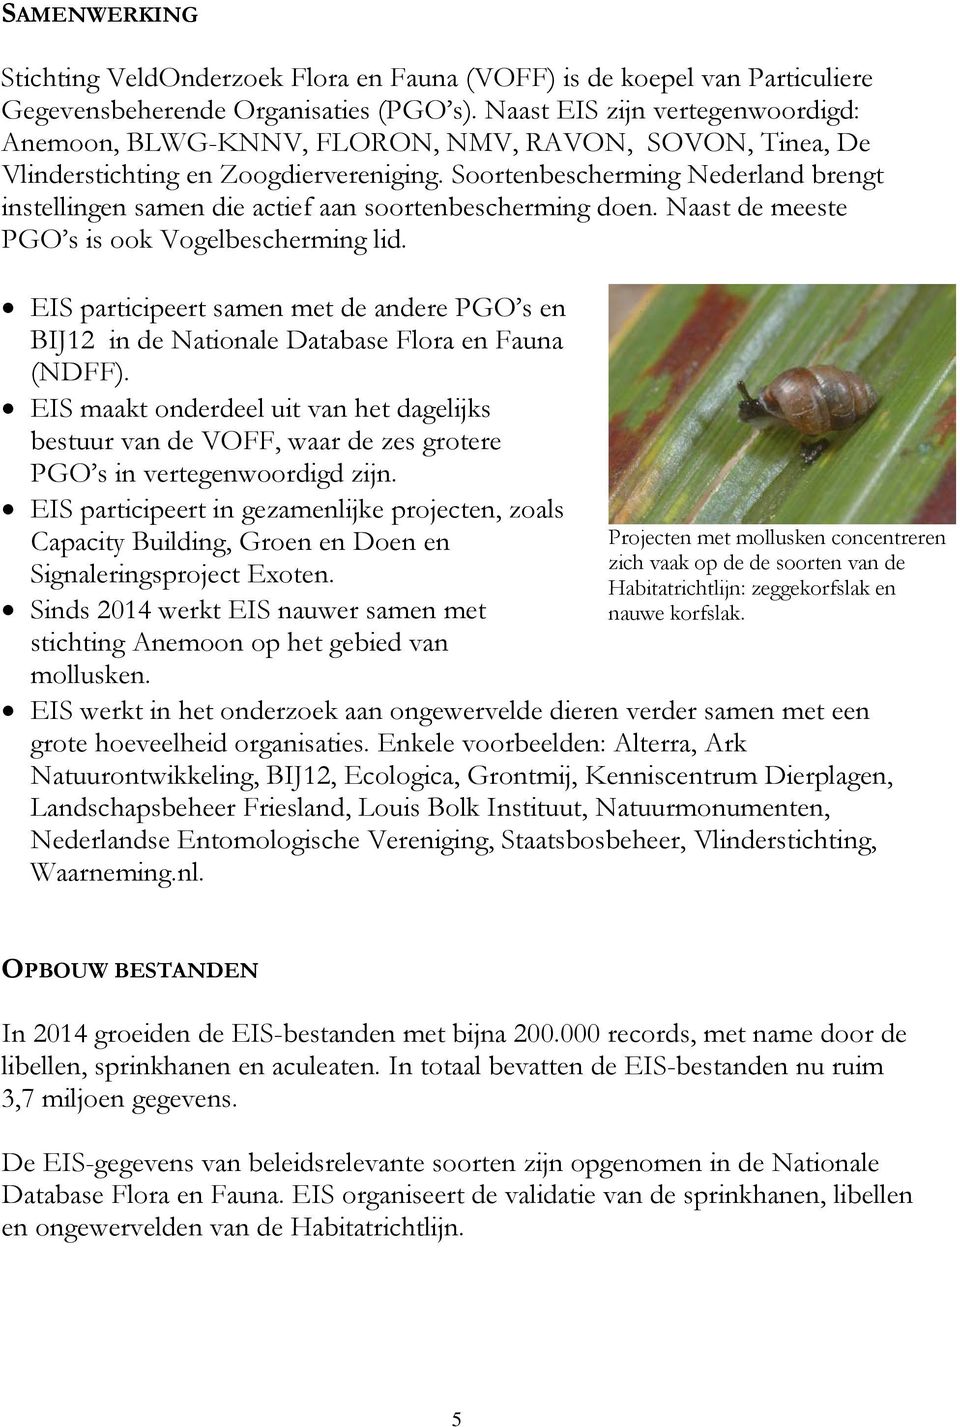 Soortenbescherming Nederland brengt instellingen samen die actief aan soortenbescherming doen. Naast de meeste PGO s is ook Vogelbescherming lid.